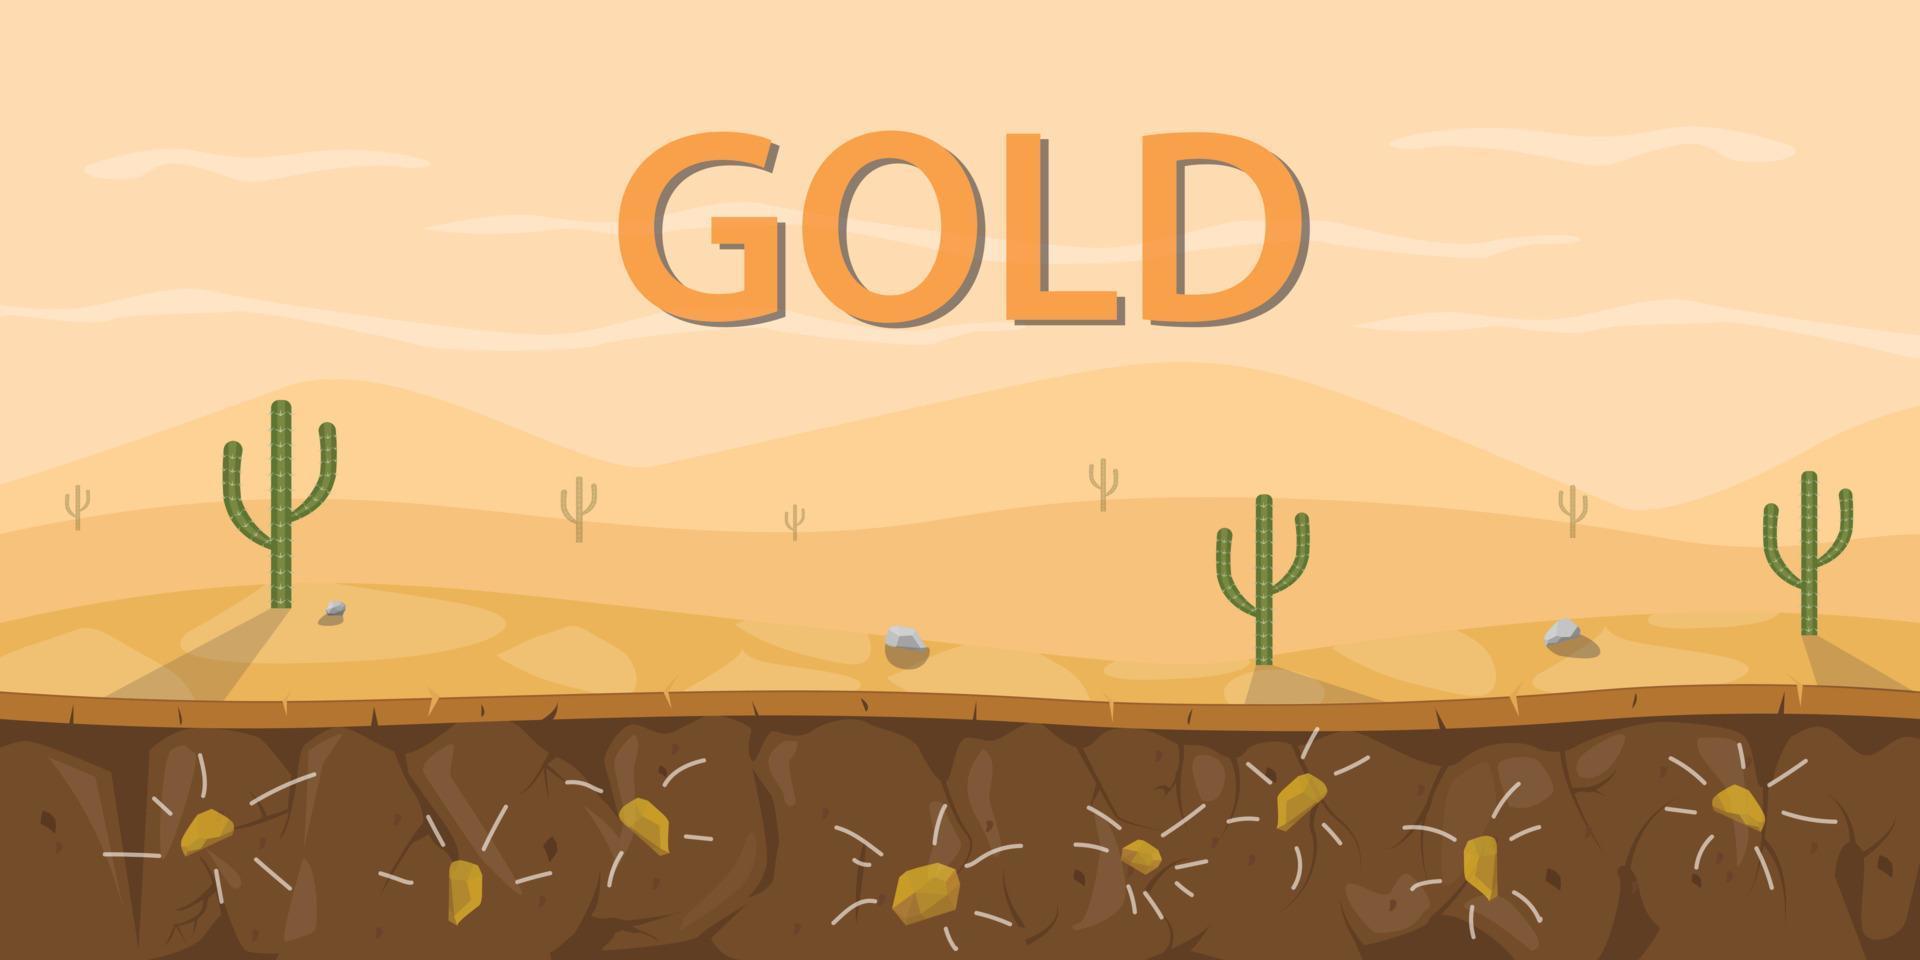 goldmine steinbodenschicht mit kaktus auf wüstengebiet vektorgrafik illustration vektor